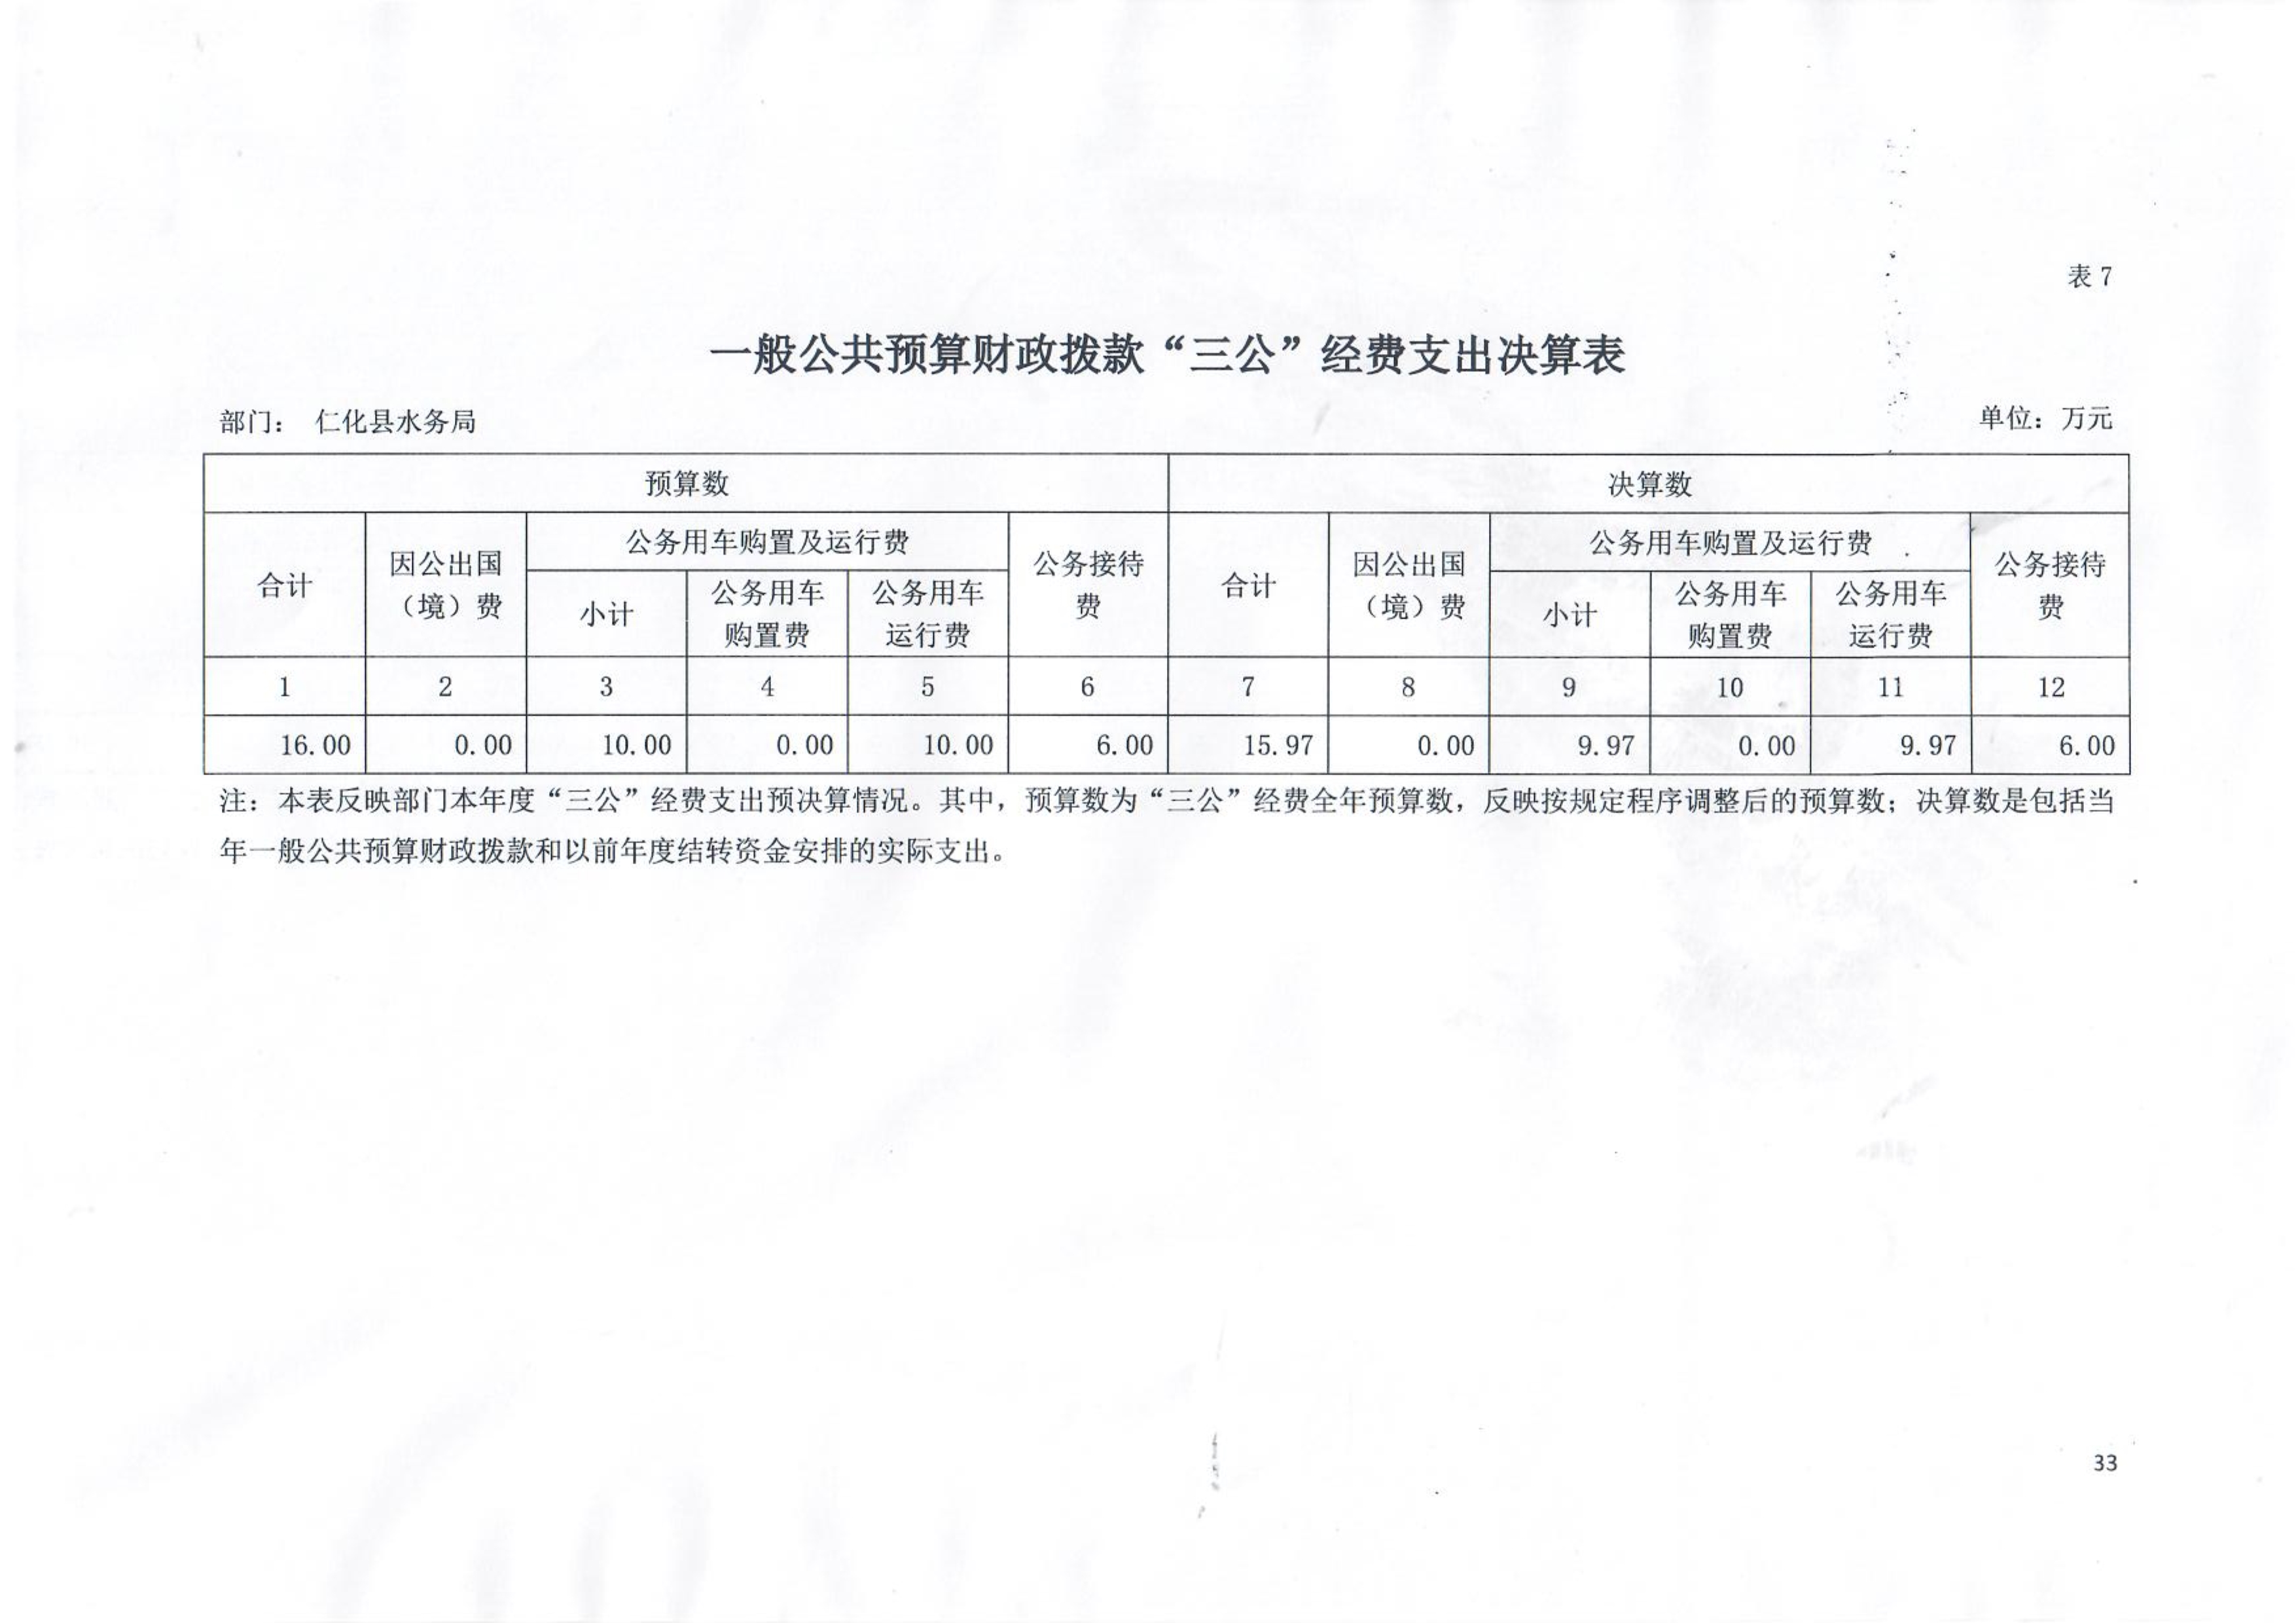 110811010310_02020年仁化县水务局一般公共预算财政拨款“三公”经费支出决算表_1.Jpeg